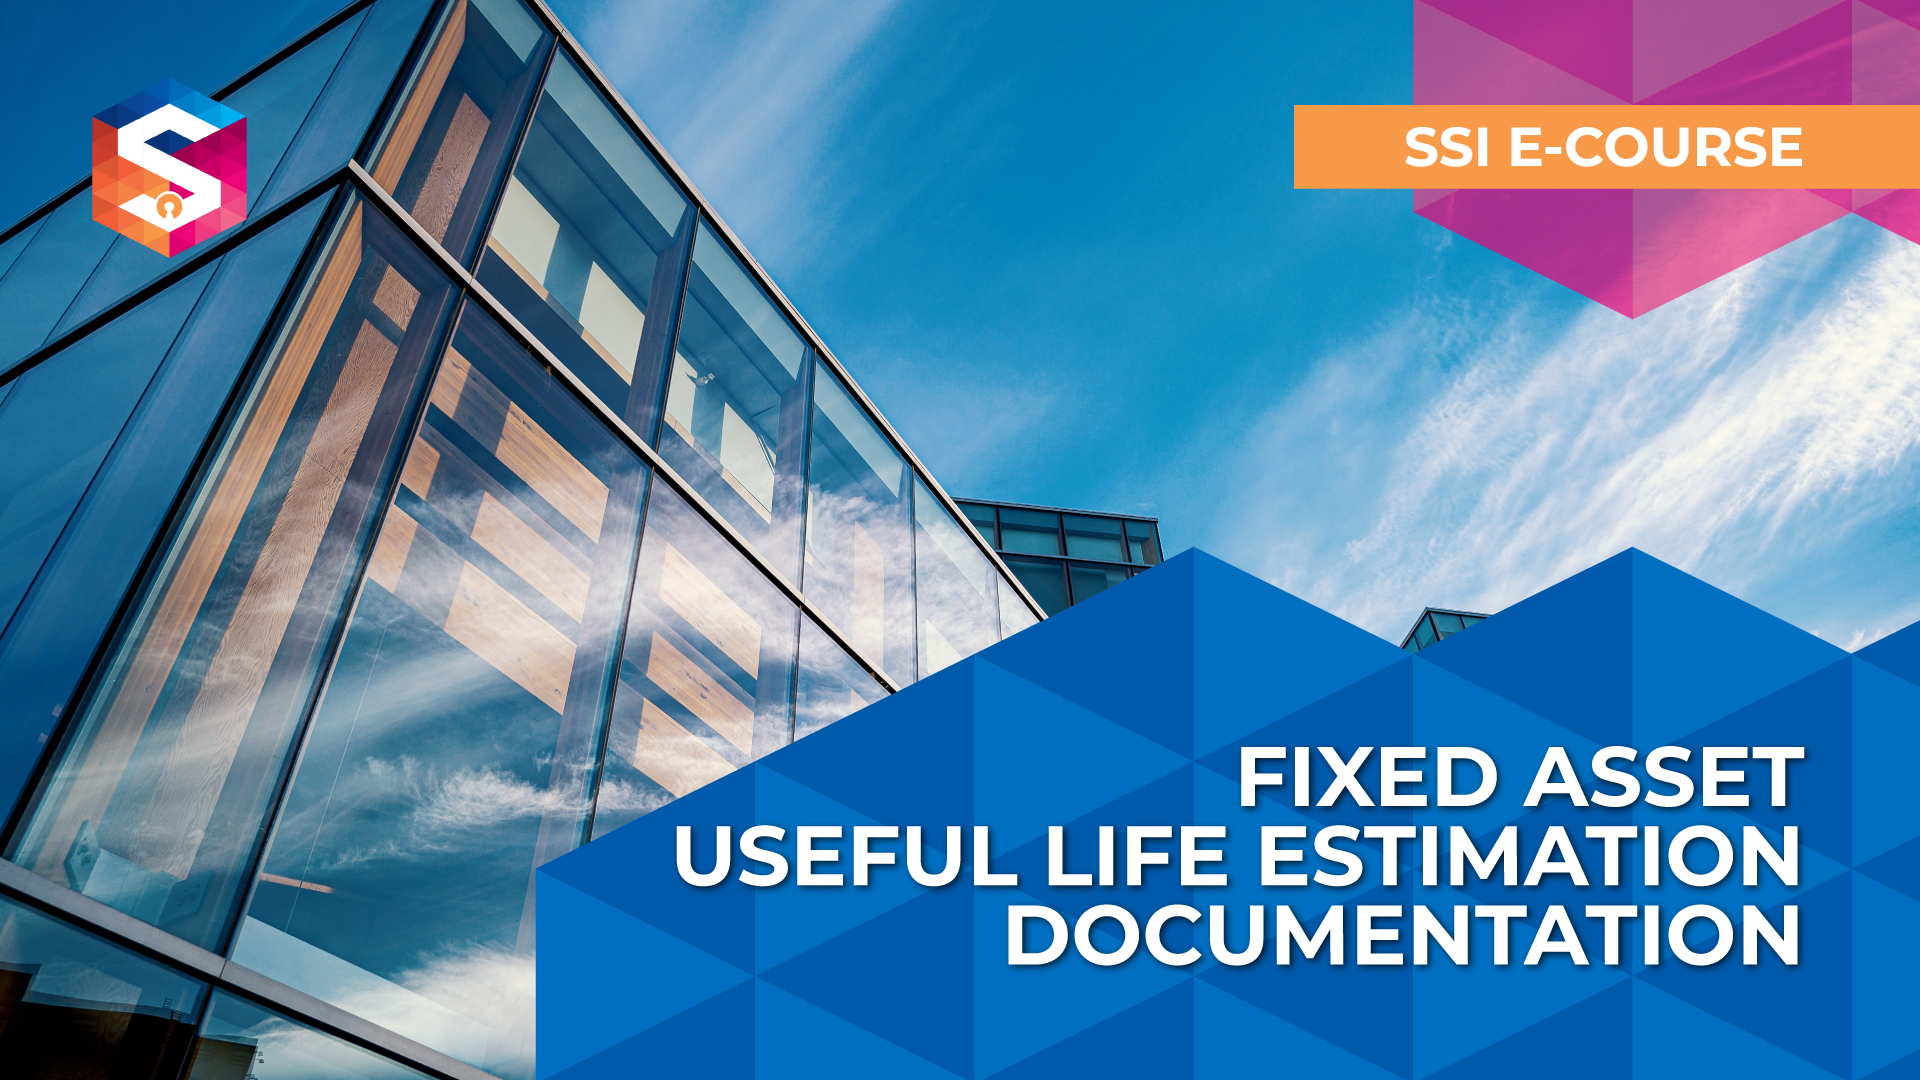 Fixed Asset Useful Life Estimation Change Documentation